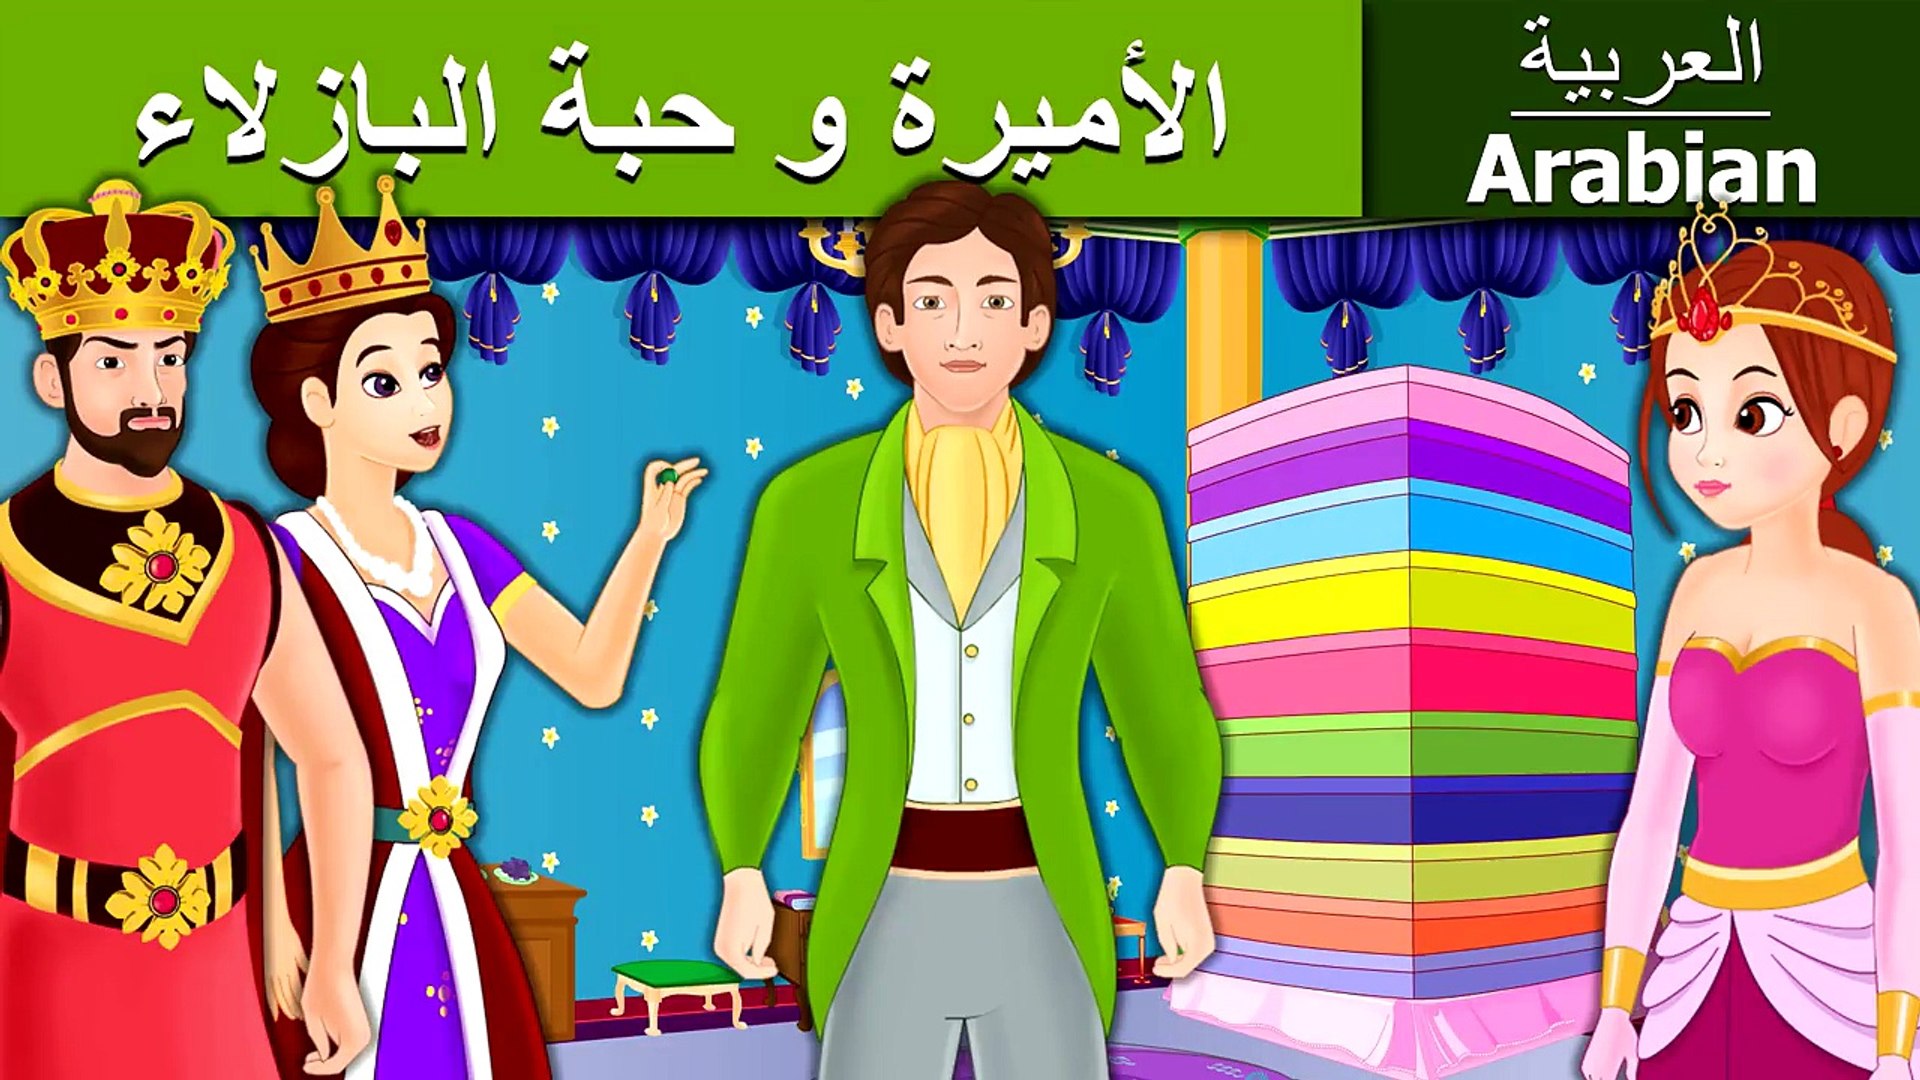 ⁣الأميرة و حبة البازلاء - قصص اطفال - بالعربية - قصص اطفال قبل النوم - 4K UHD - Arabian Fairy Tales